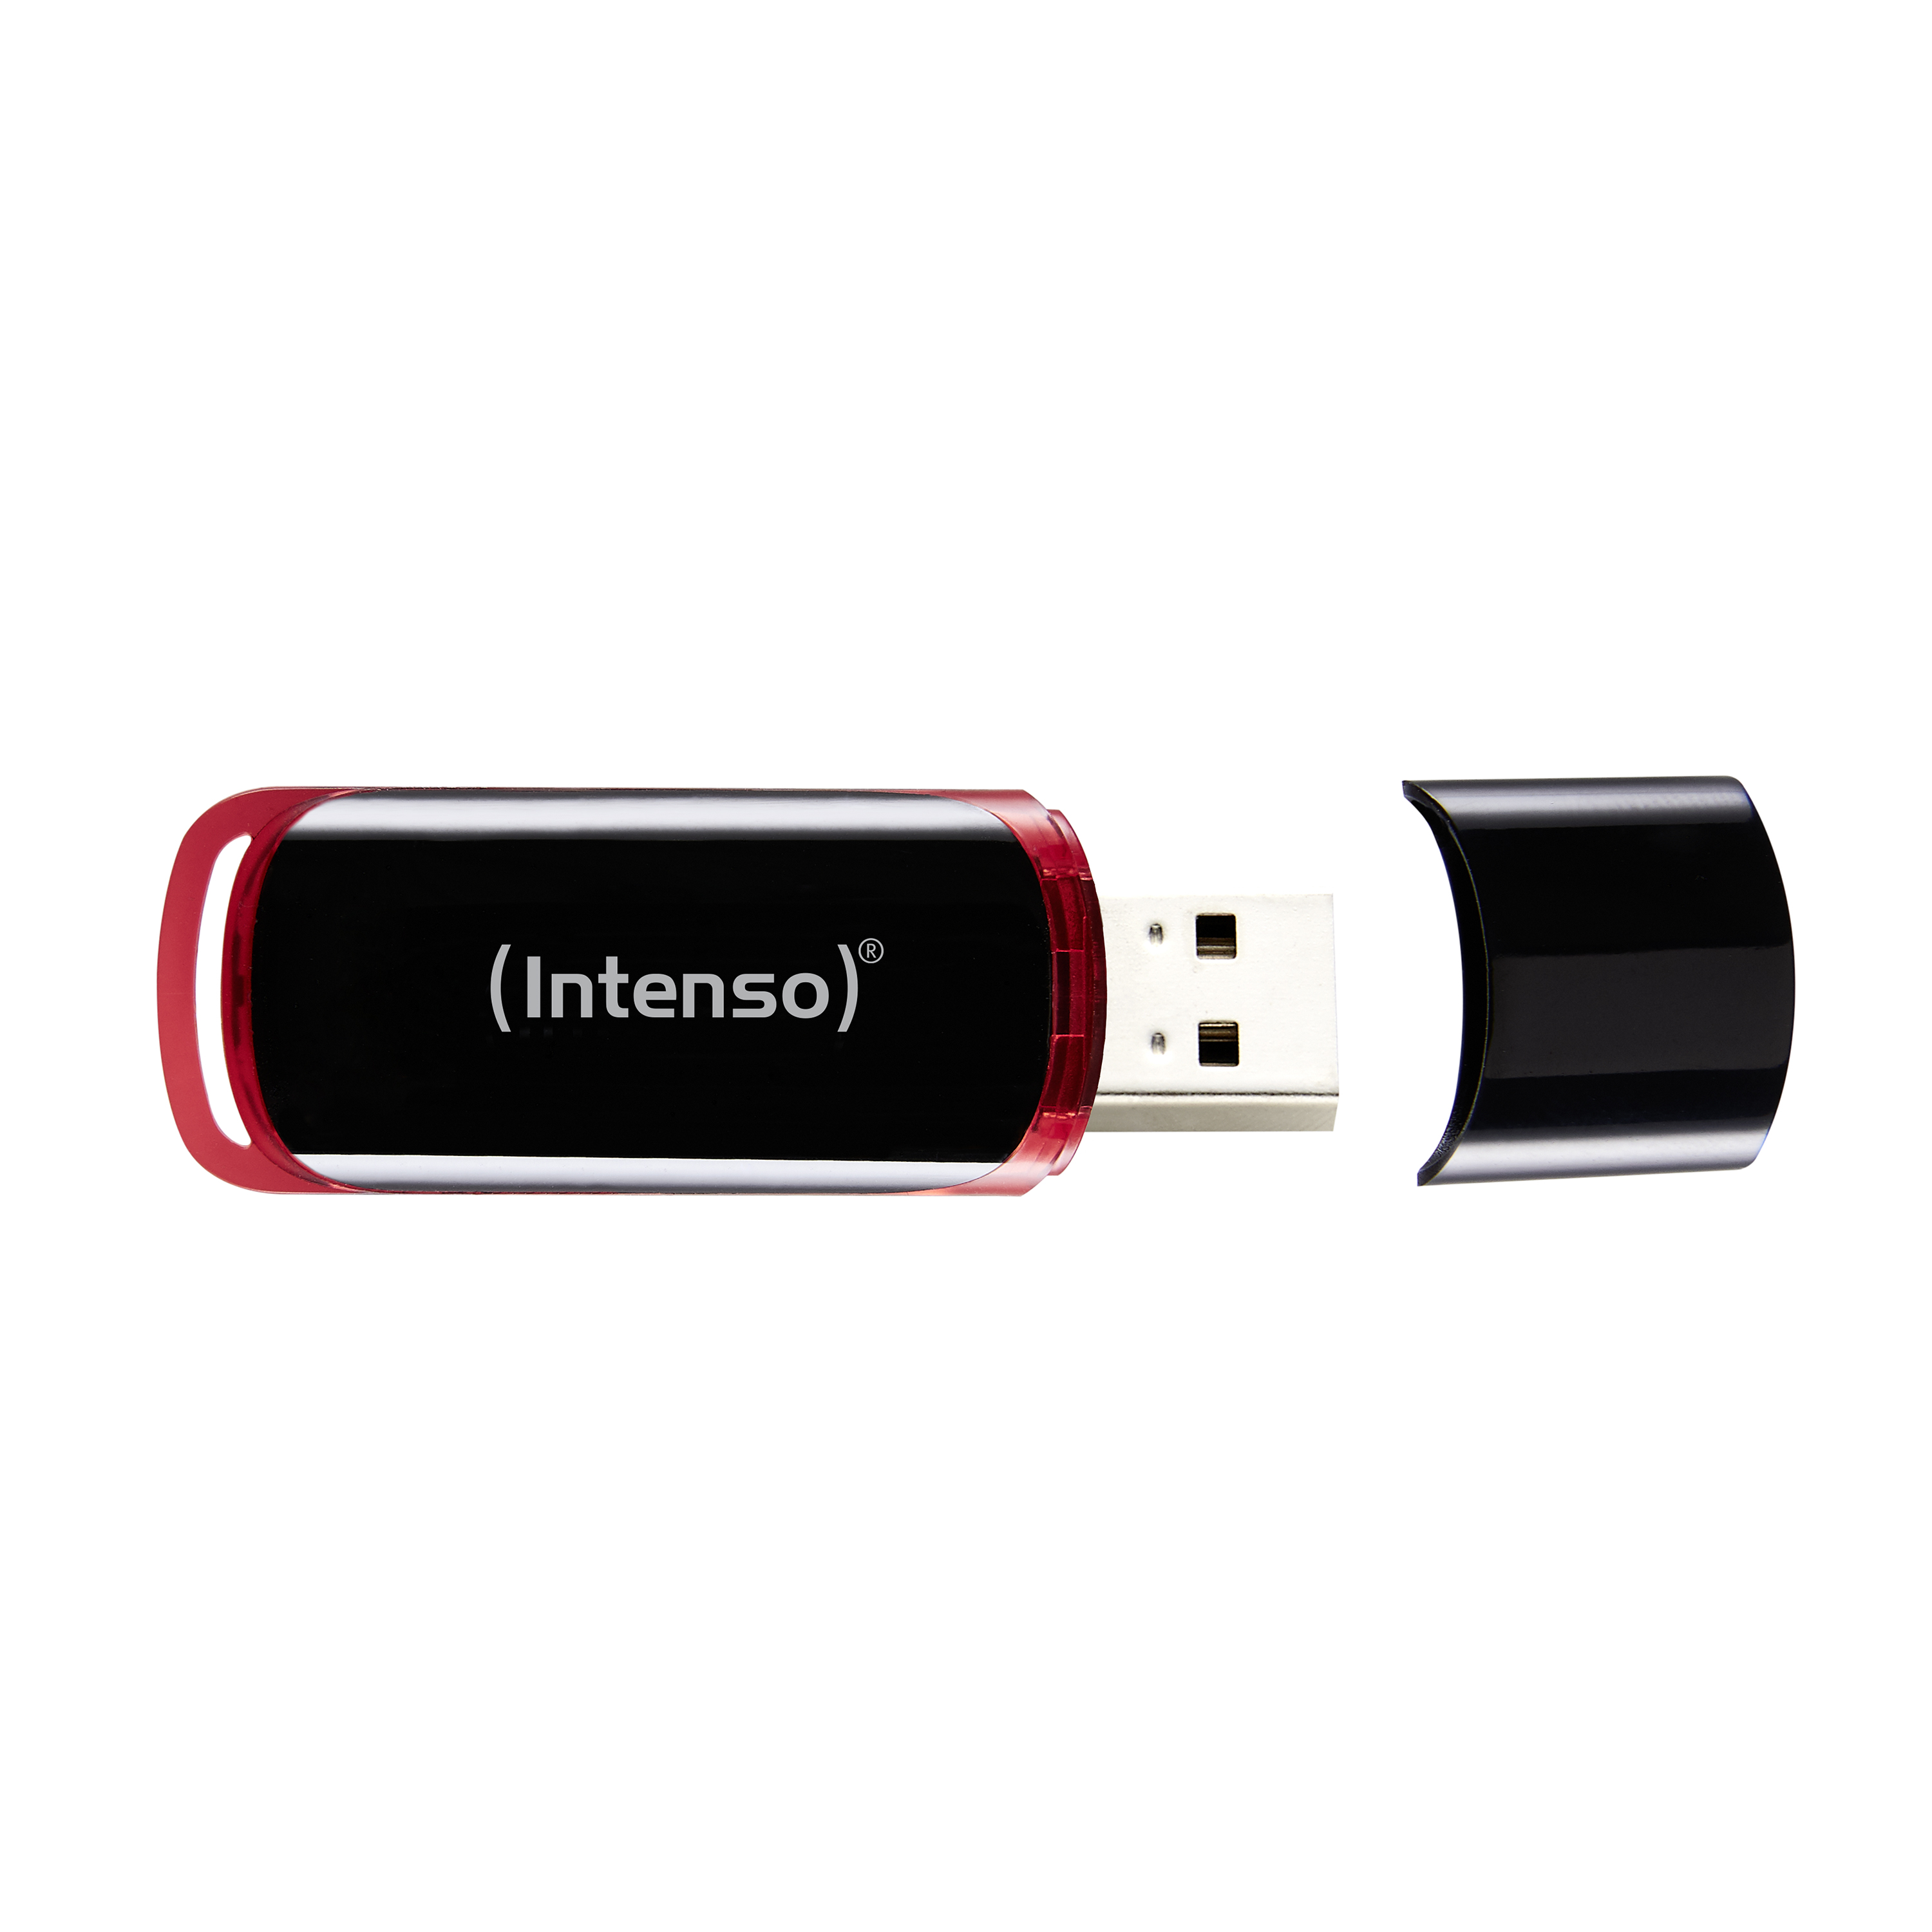 16GB (schwarz-rot, GB) USB-Stick Line INTENSO 16 Business